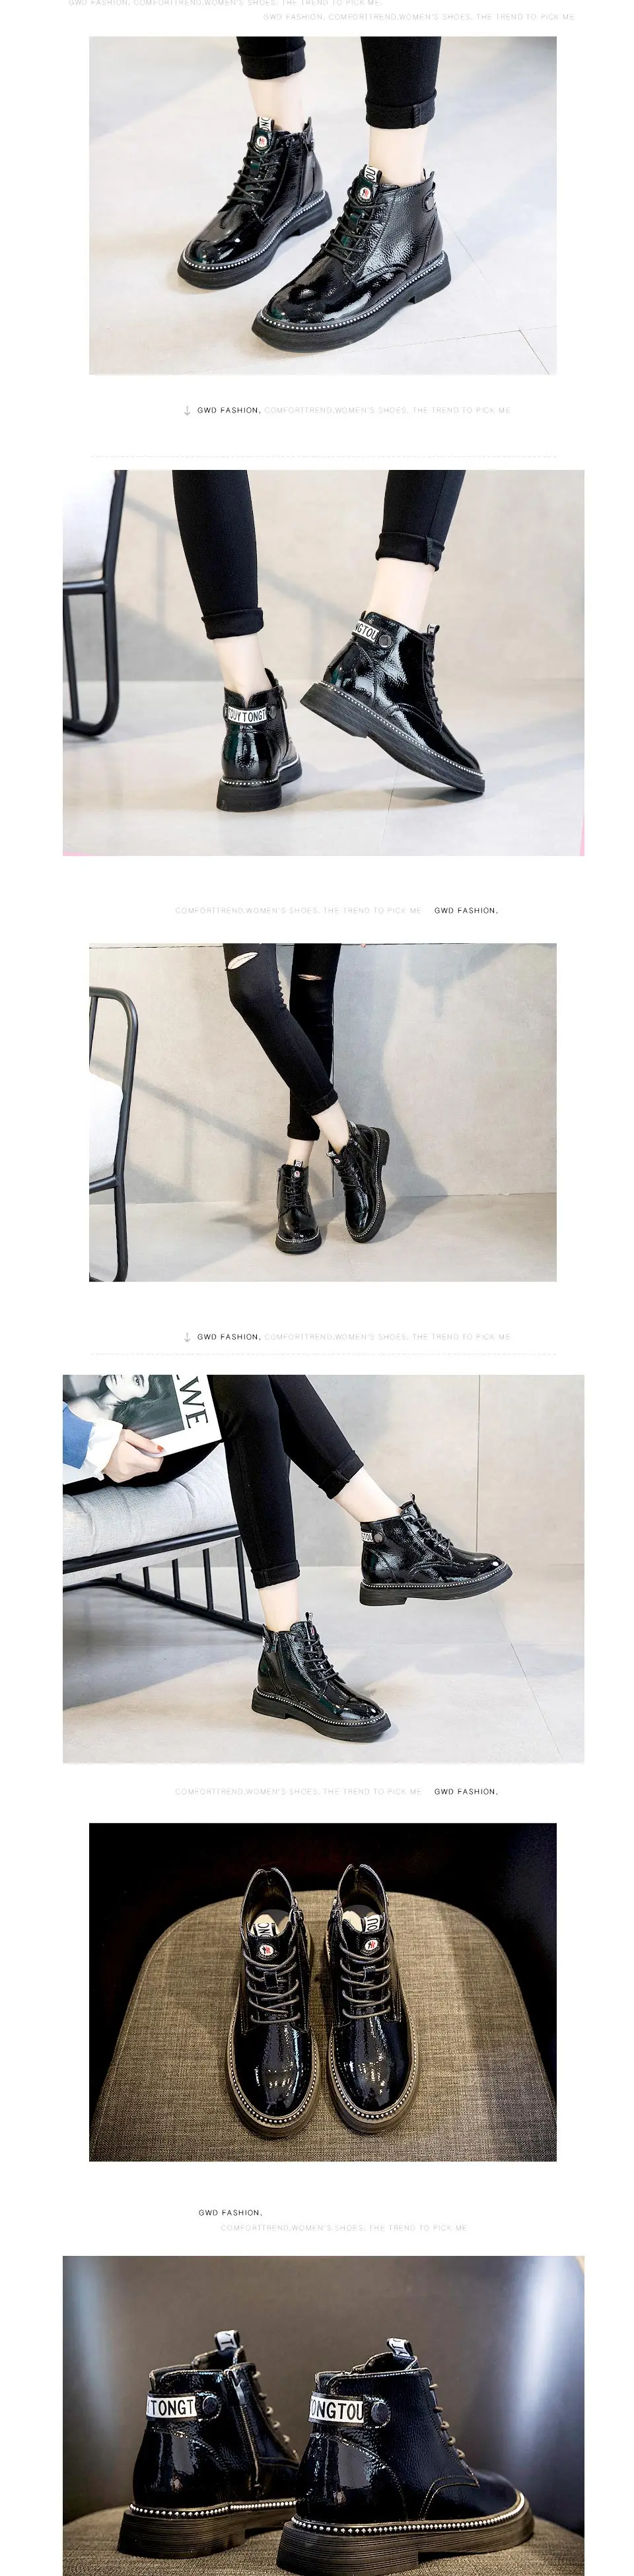 Haisum/женские ботинки модные ботинки женские ботинки из лакированной кожи на платформе; сезон весна-осень H-811